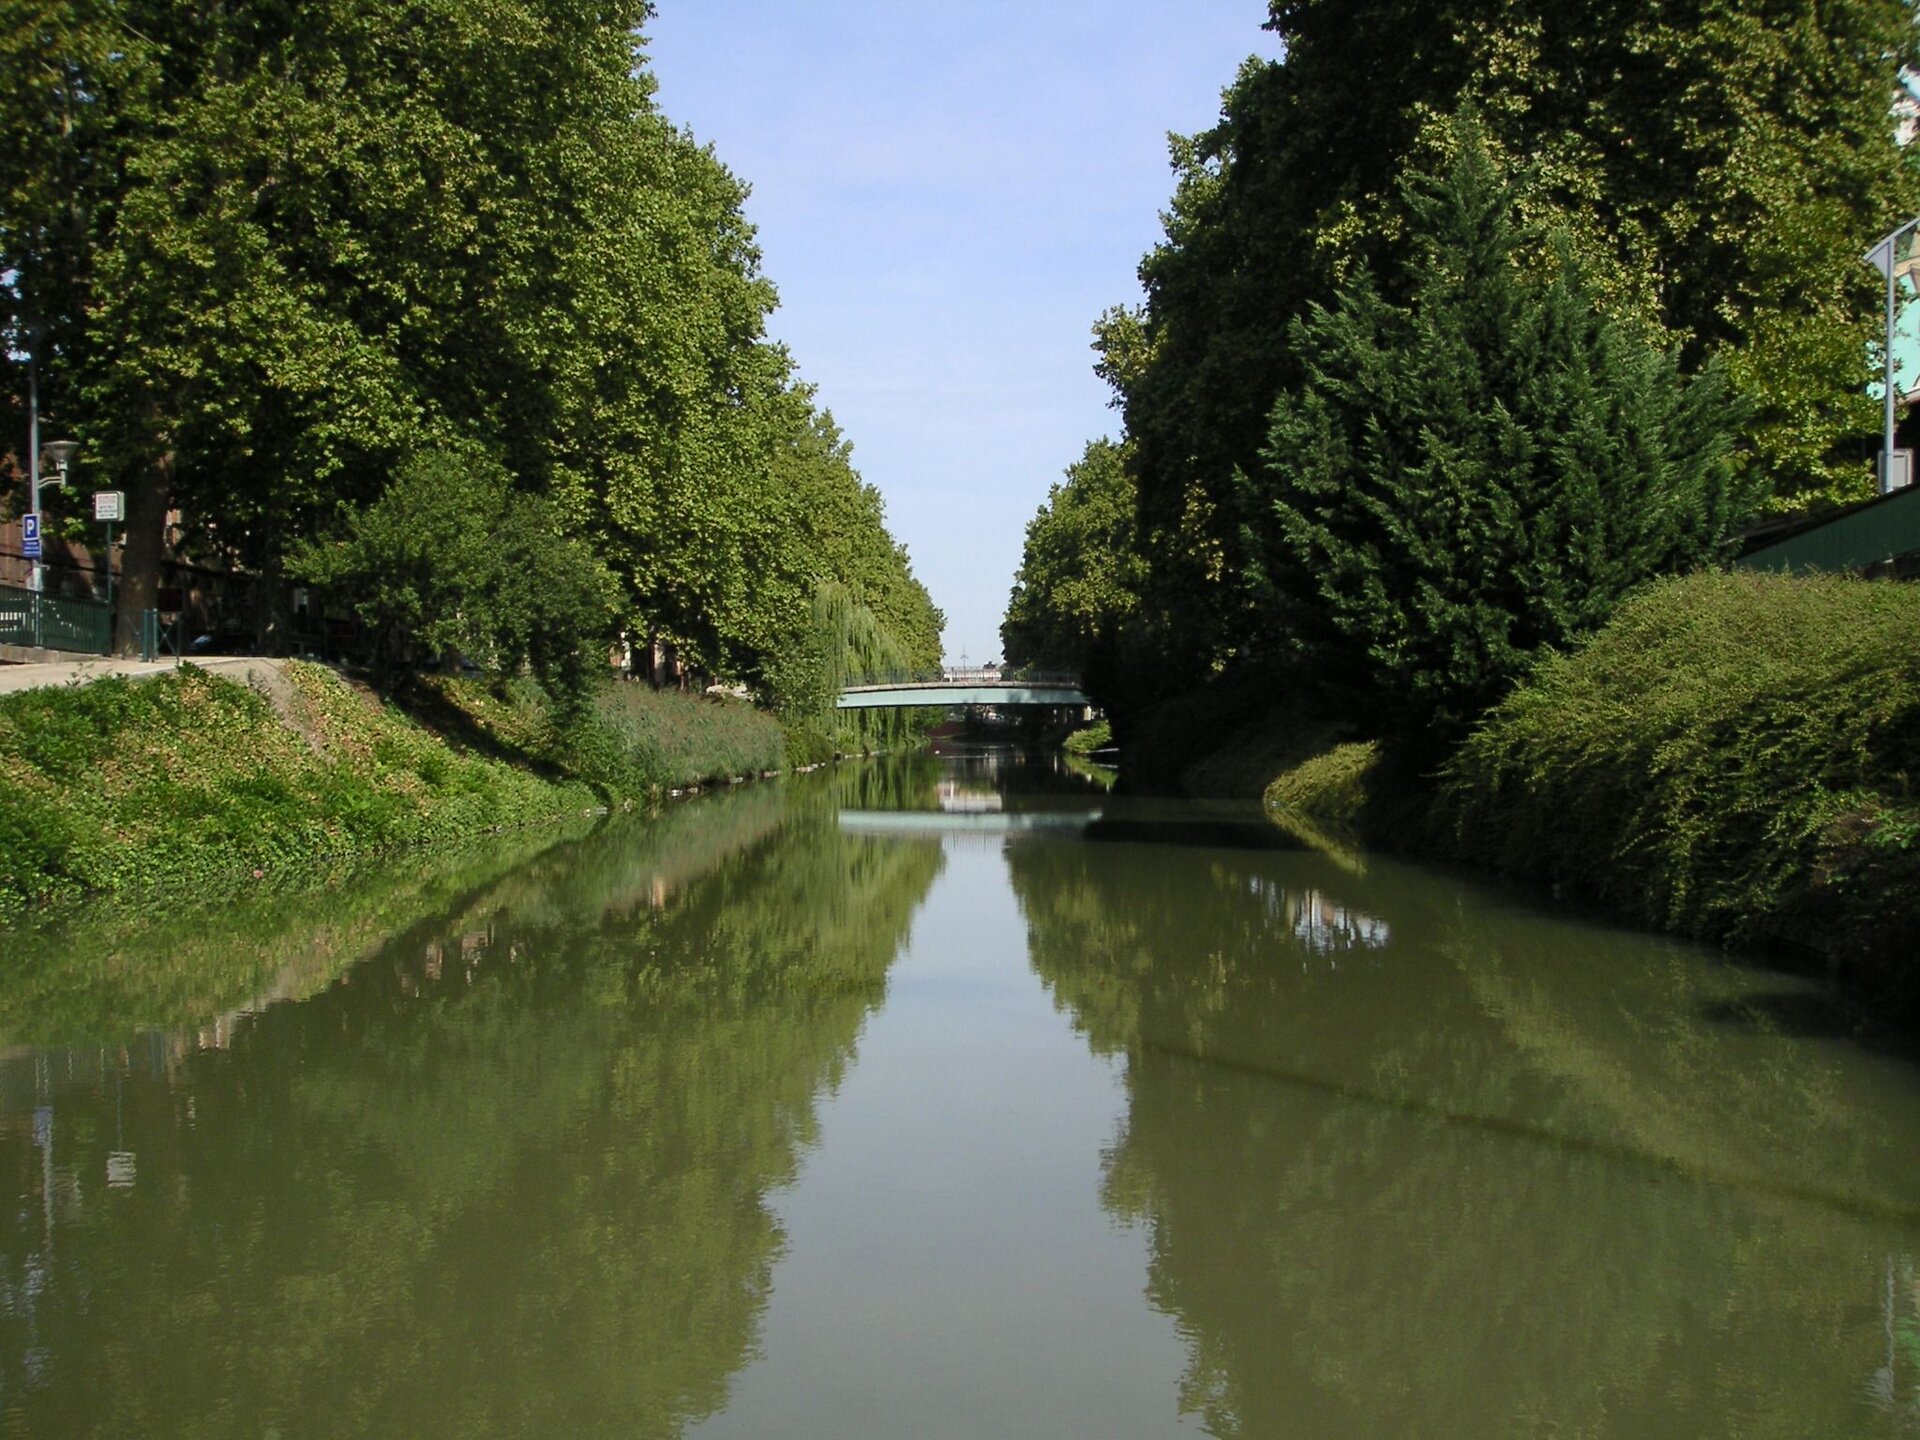 Zdjęcie przedstawia kanał. Pośrodku znajduje się płynąca woda, z dwóch stron rozpościerają się drzewa, które odbijają się w lustrze wody. Między dwoma brzegami kanału rozpościera się most.